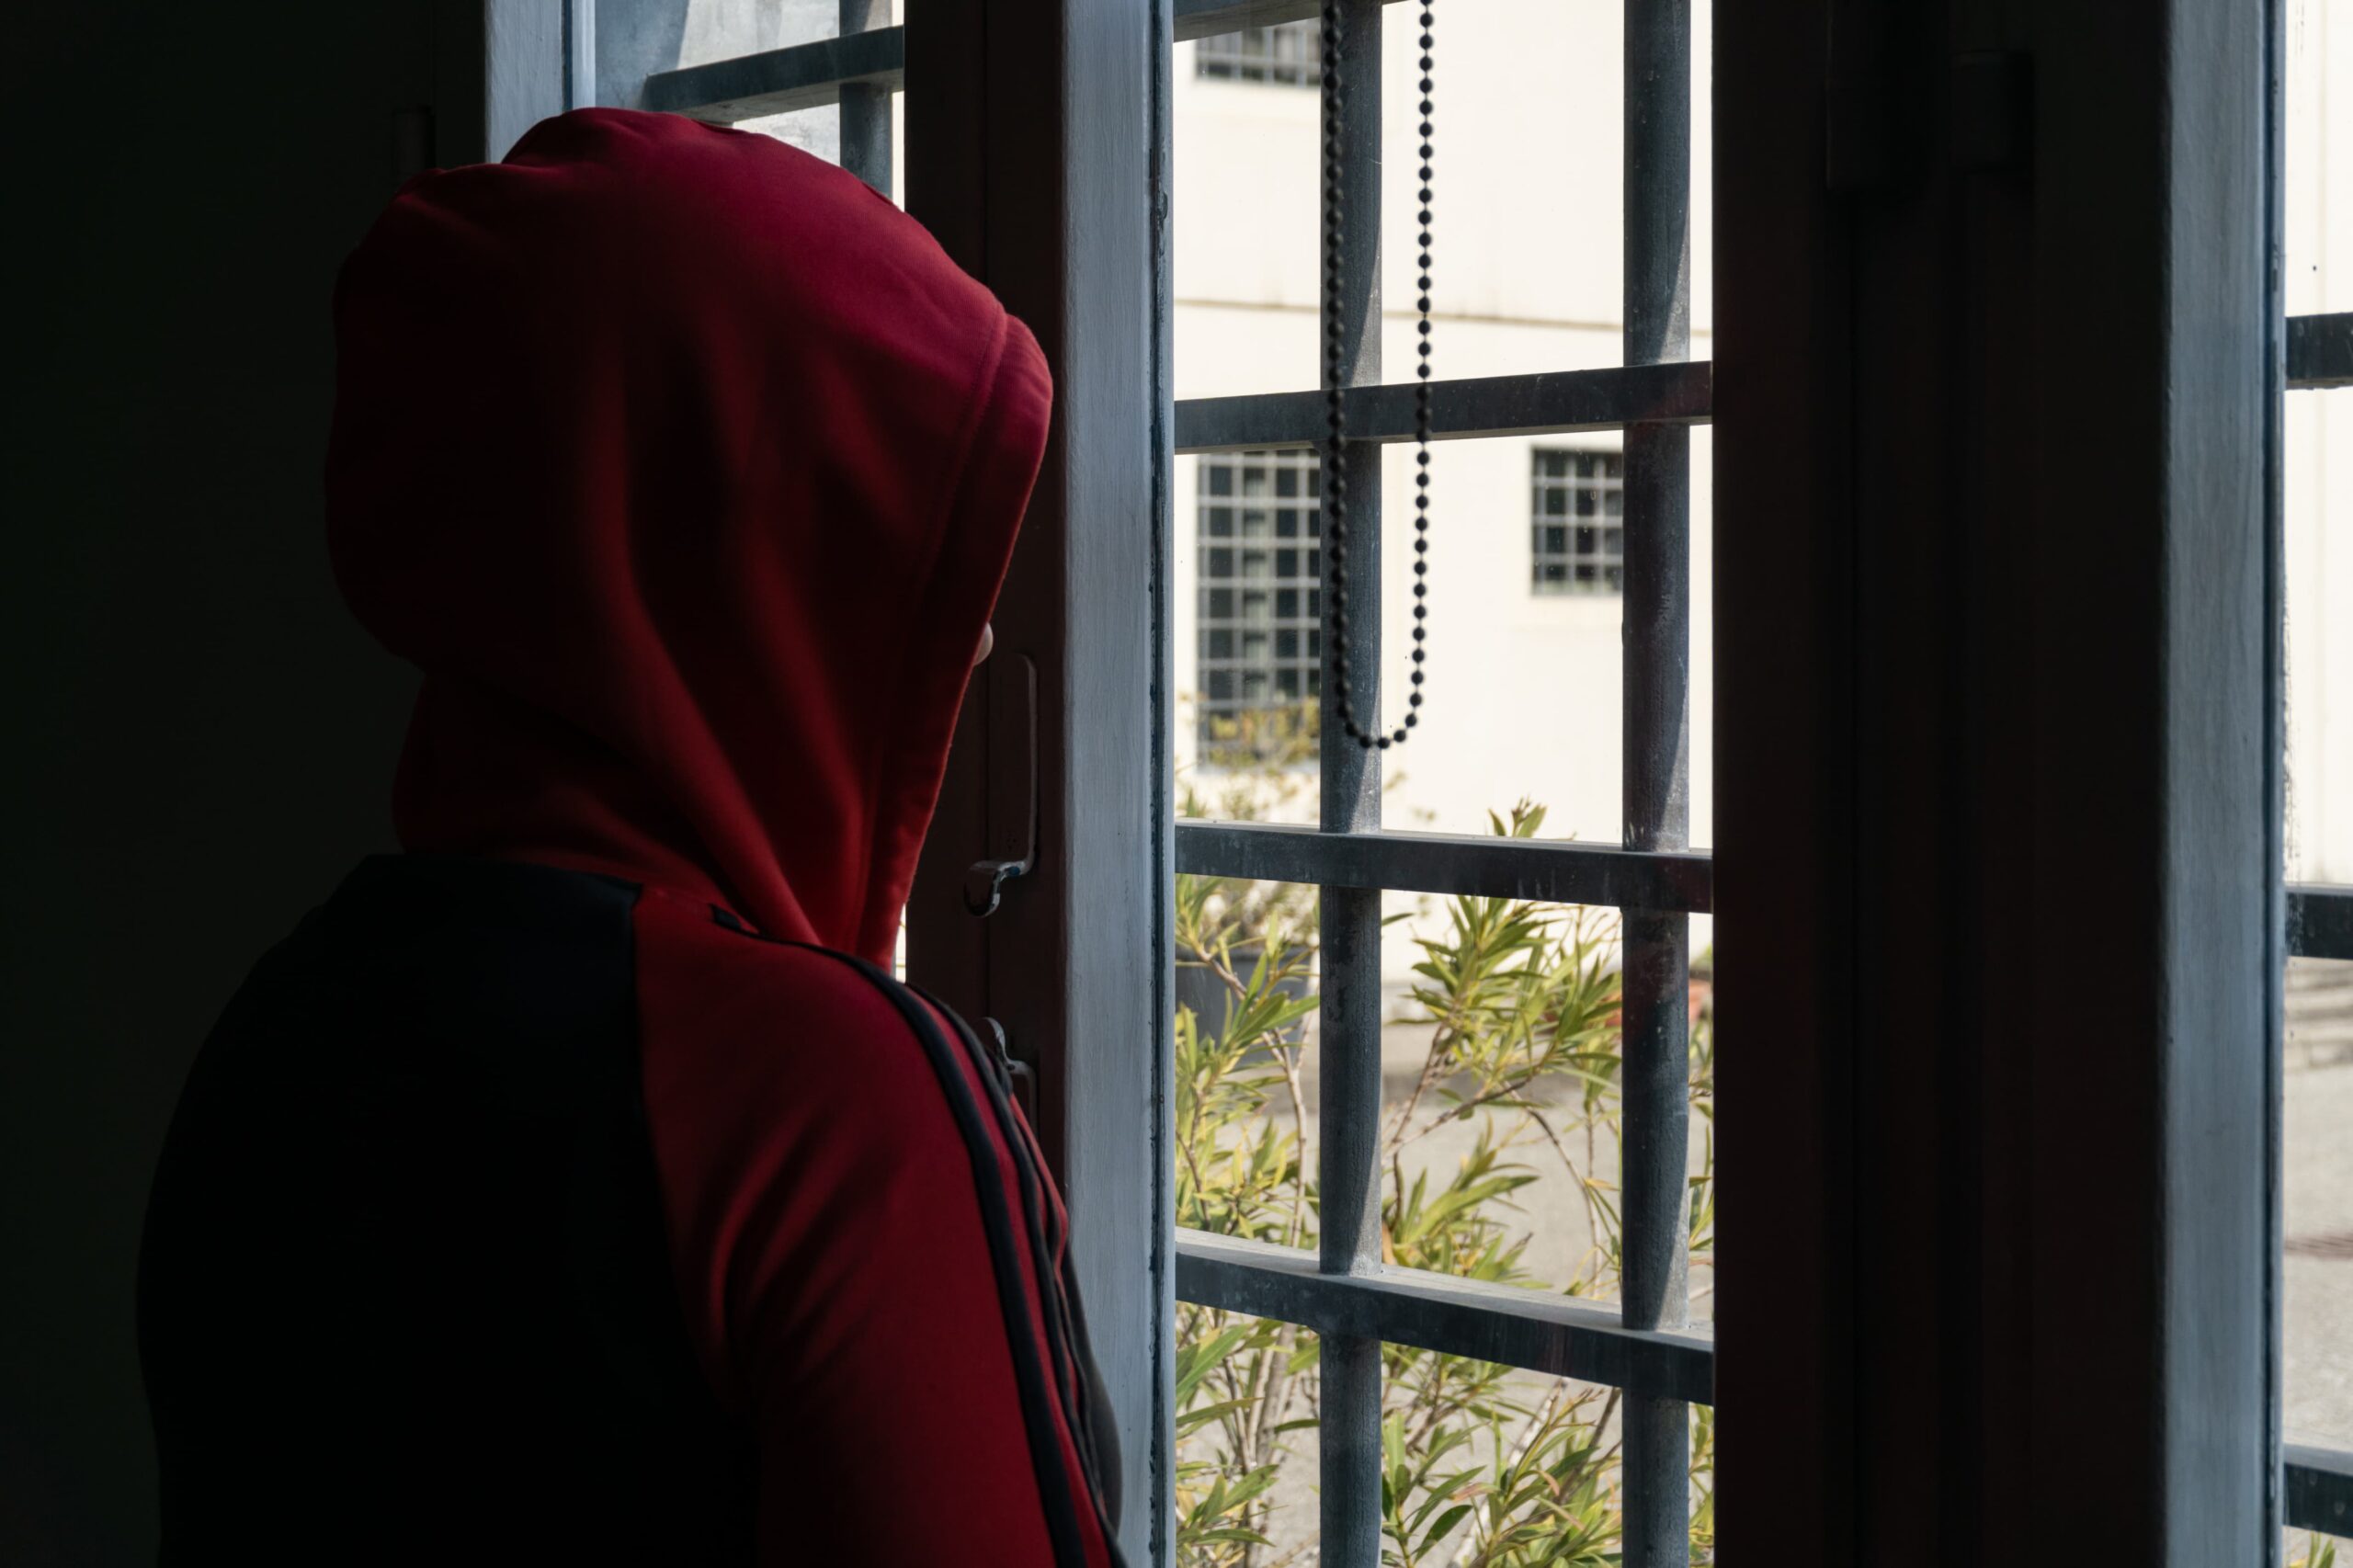 carcere - un ragazzo indossa una felpa con cappuccio rossa e guarda fun giardino fuori da una finestra con le sbarre